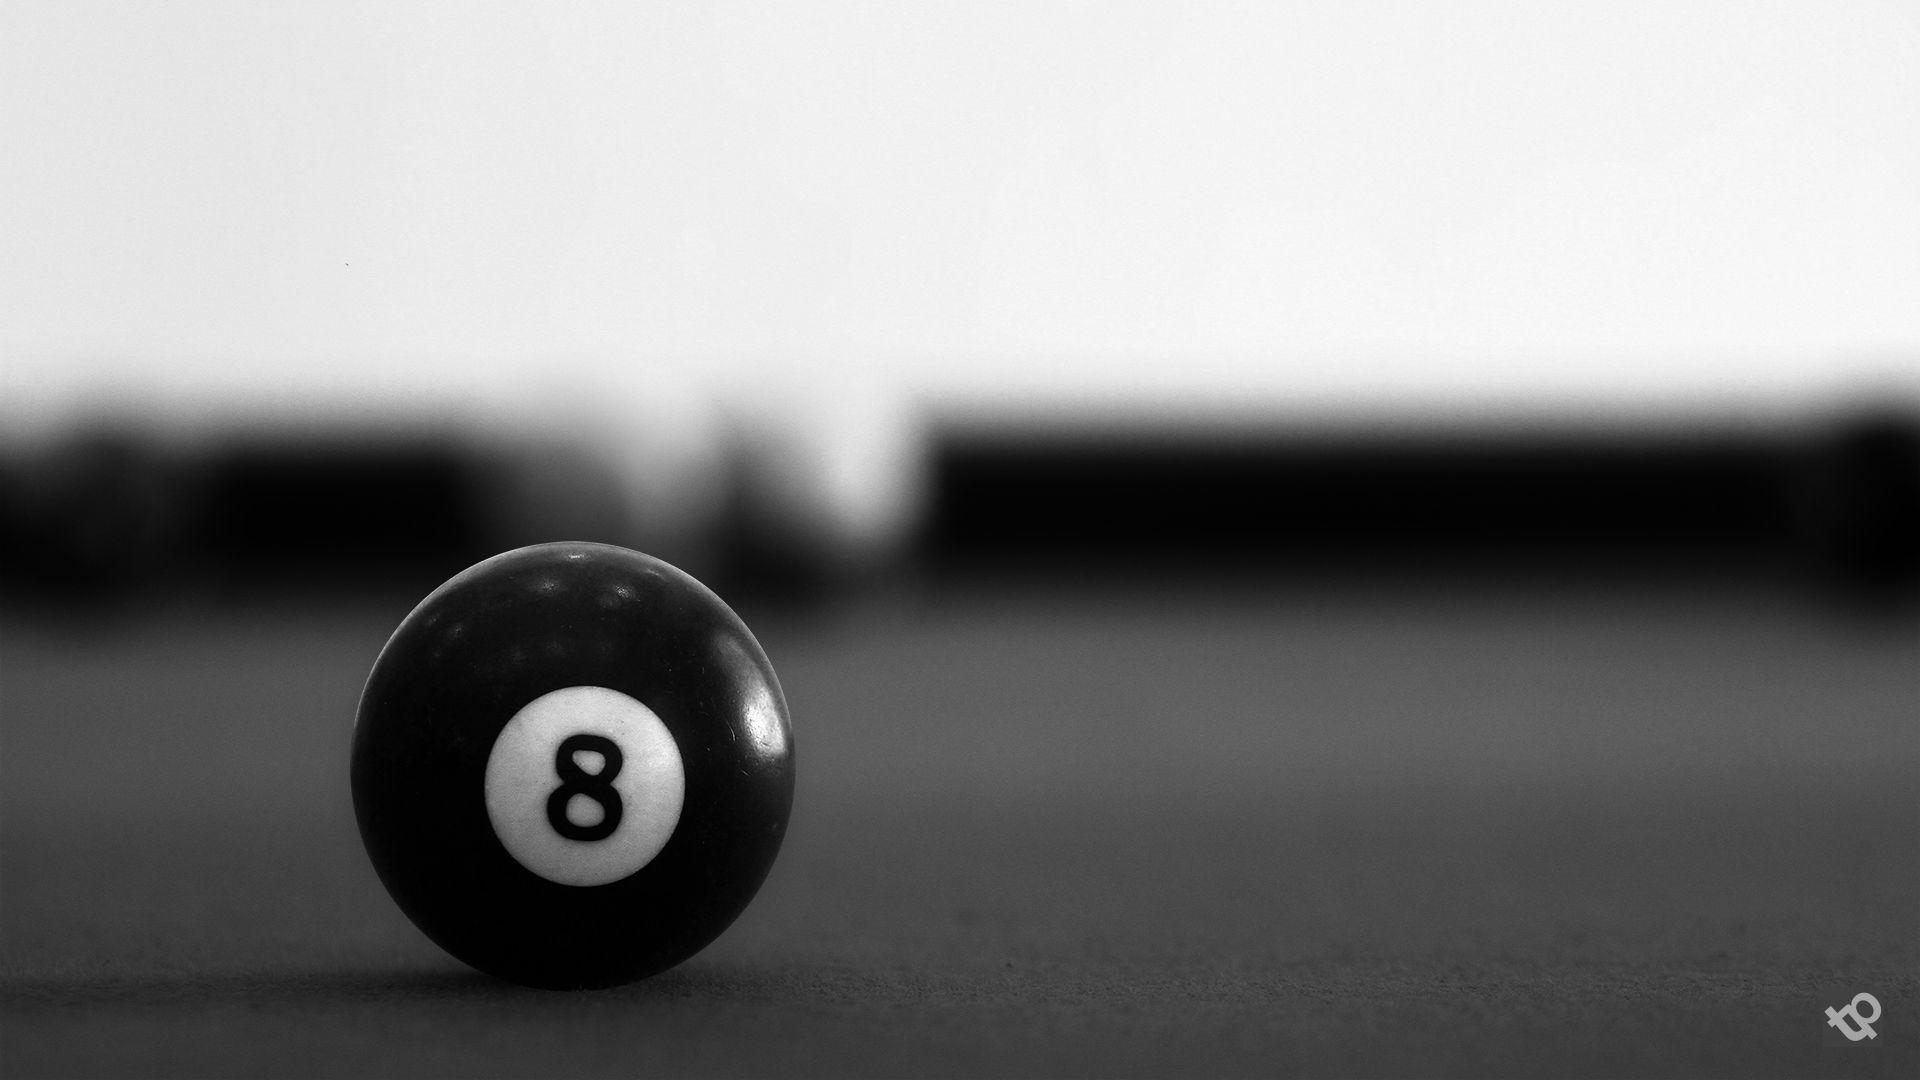 Пот 8 букв. Бильярд "8 Ball Pool". Черный бильярдный шар. Бильярдный шар с цифрой 8. Бильярд на черном фоне.